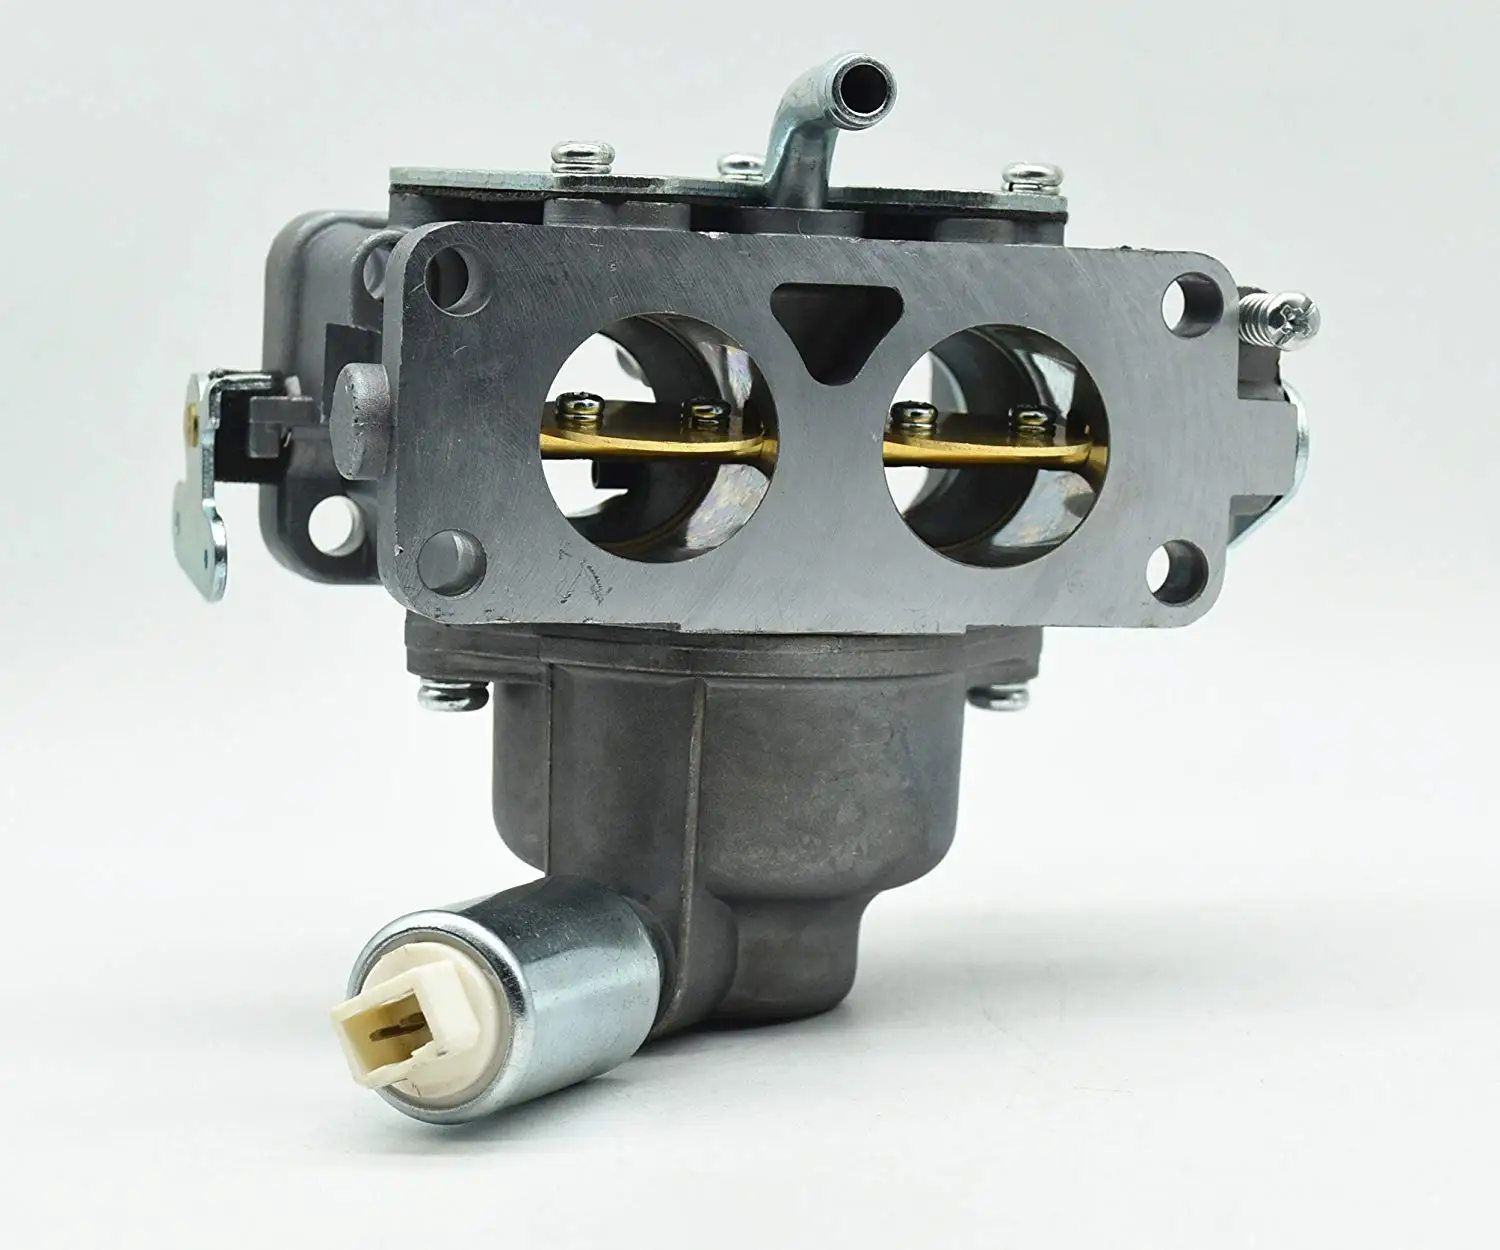 Carburetor for Briggs & Stratton  # 796258 Replaces # 796663  # 796259 Carb   E2 